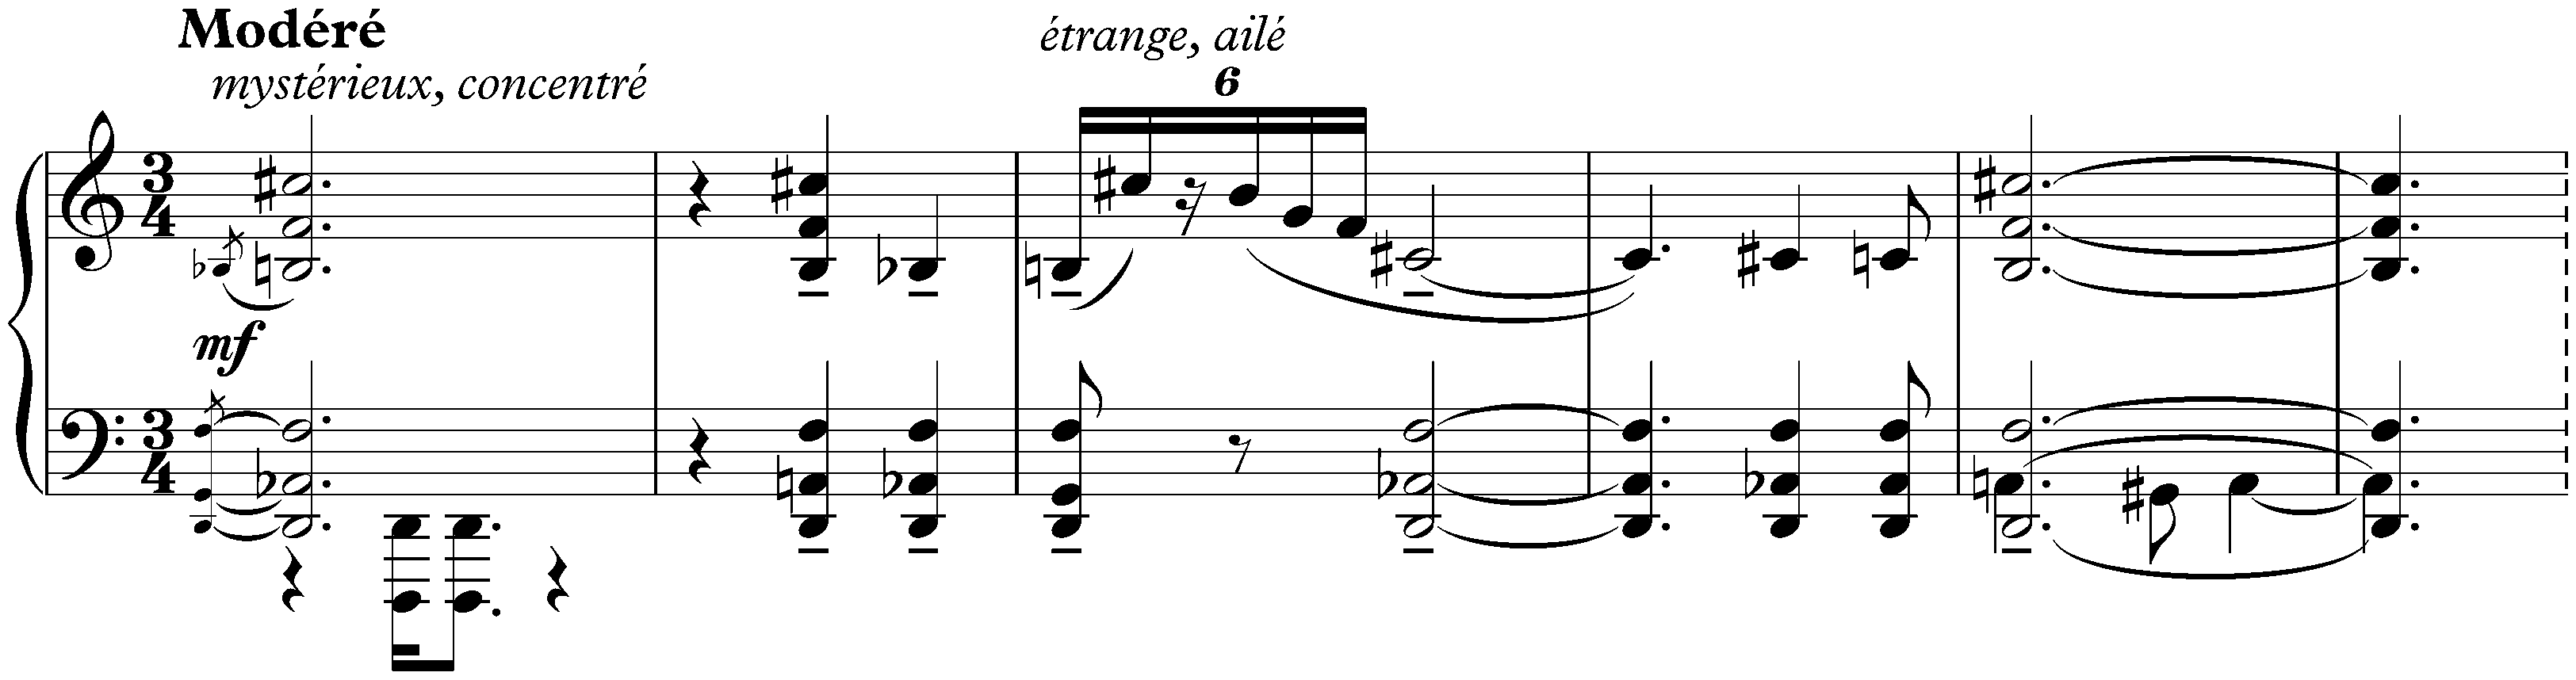 Sonata no. 6, op. 62